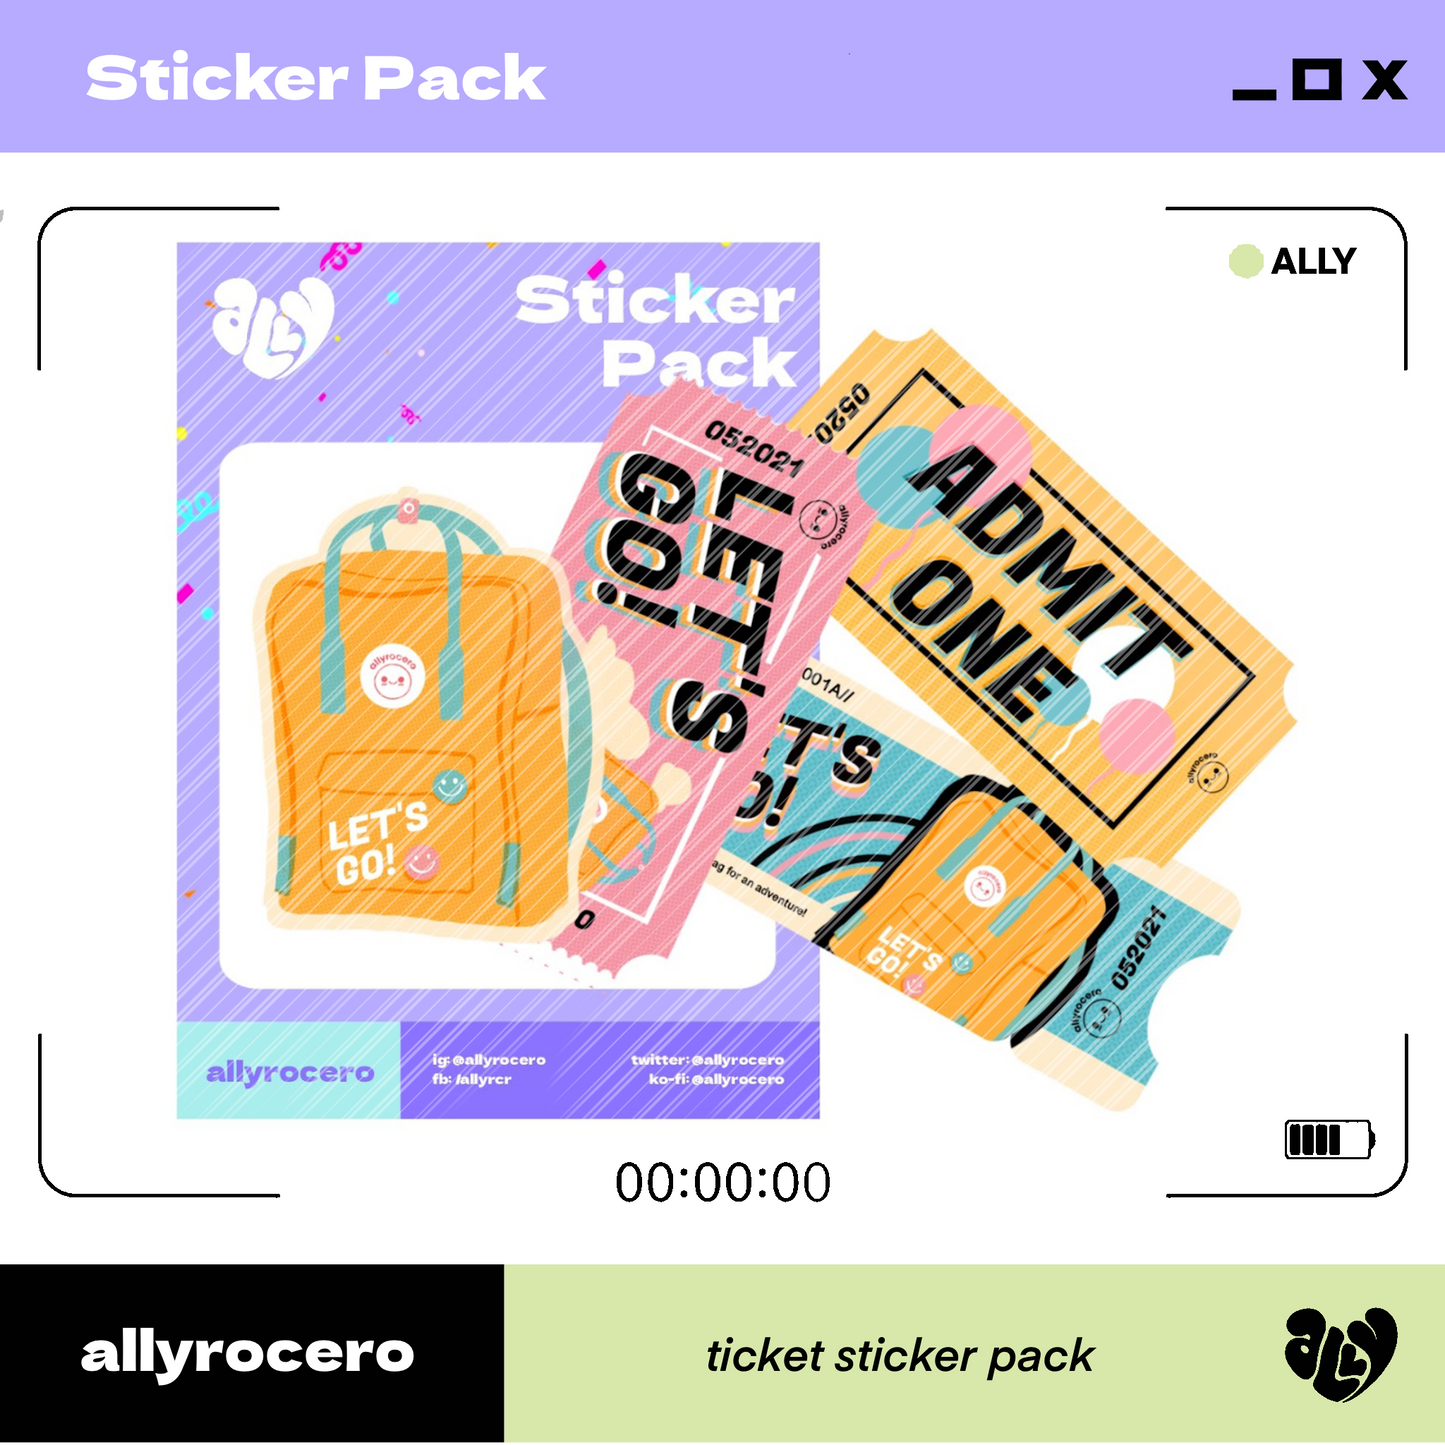 ALLYRCR - Ticket Sticker Pack